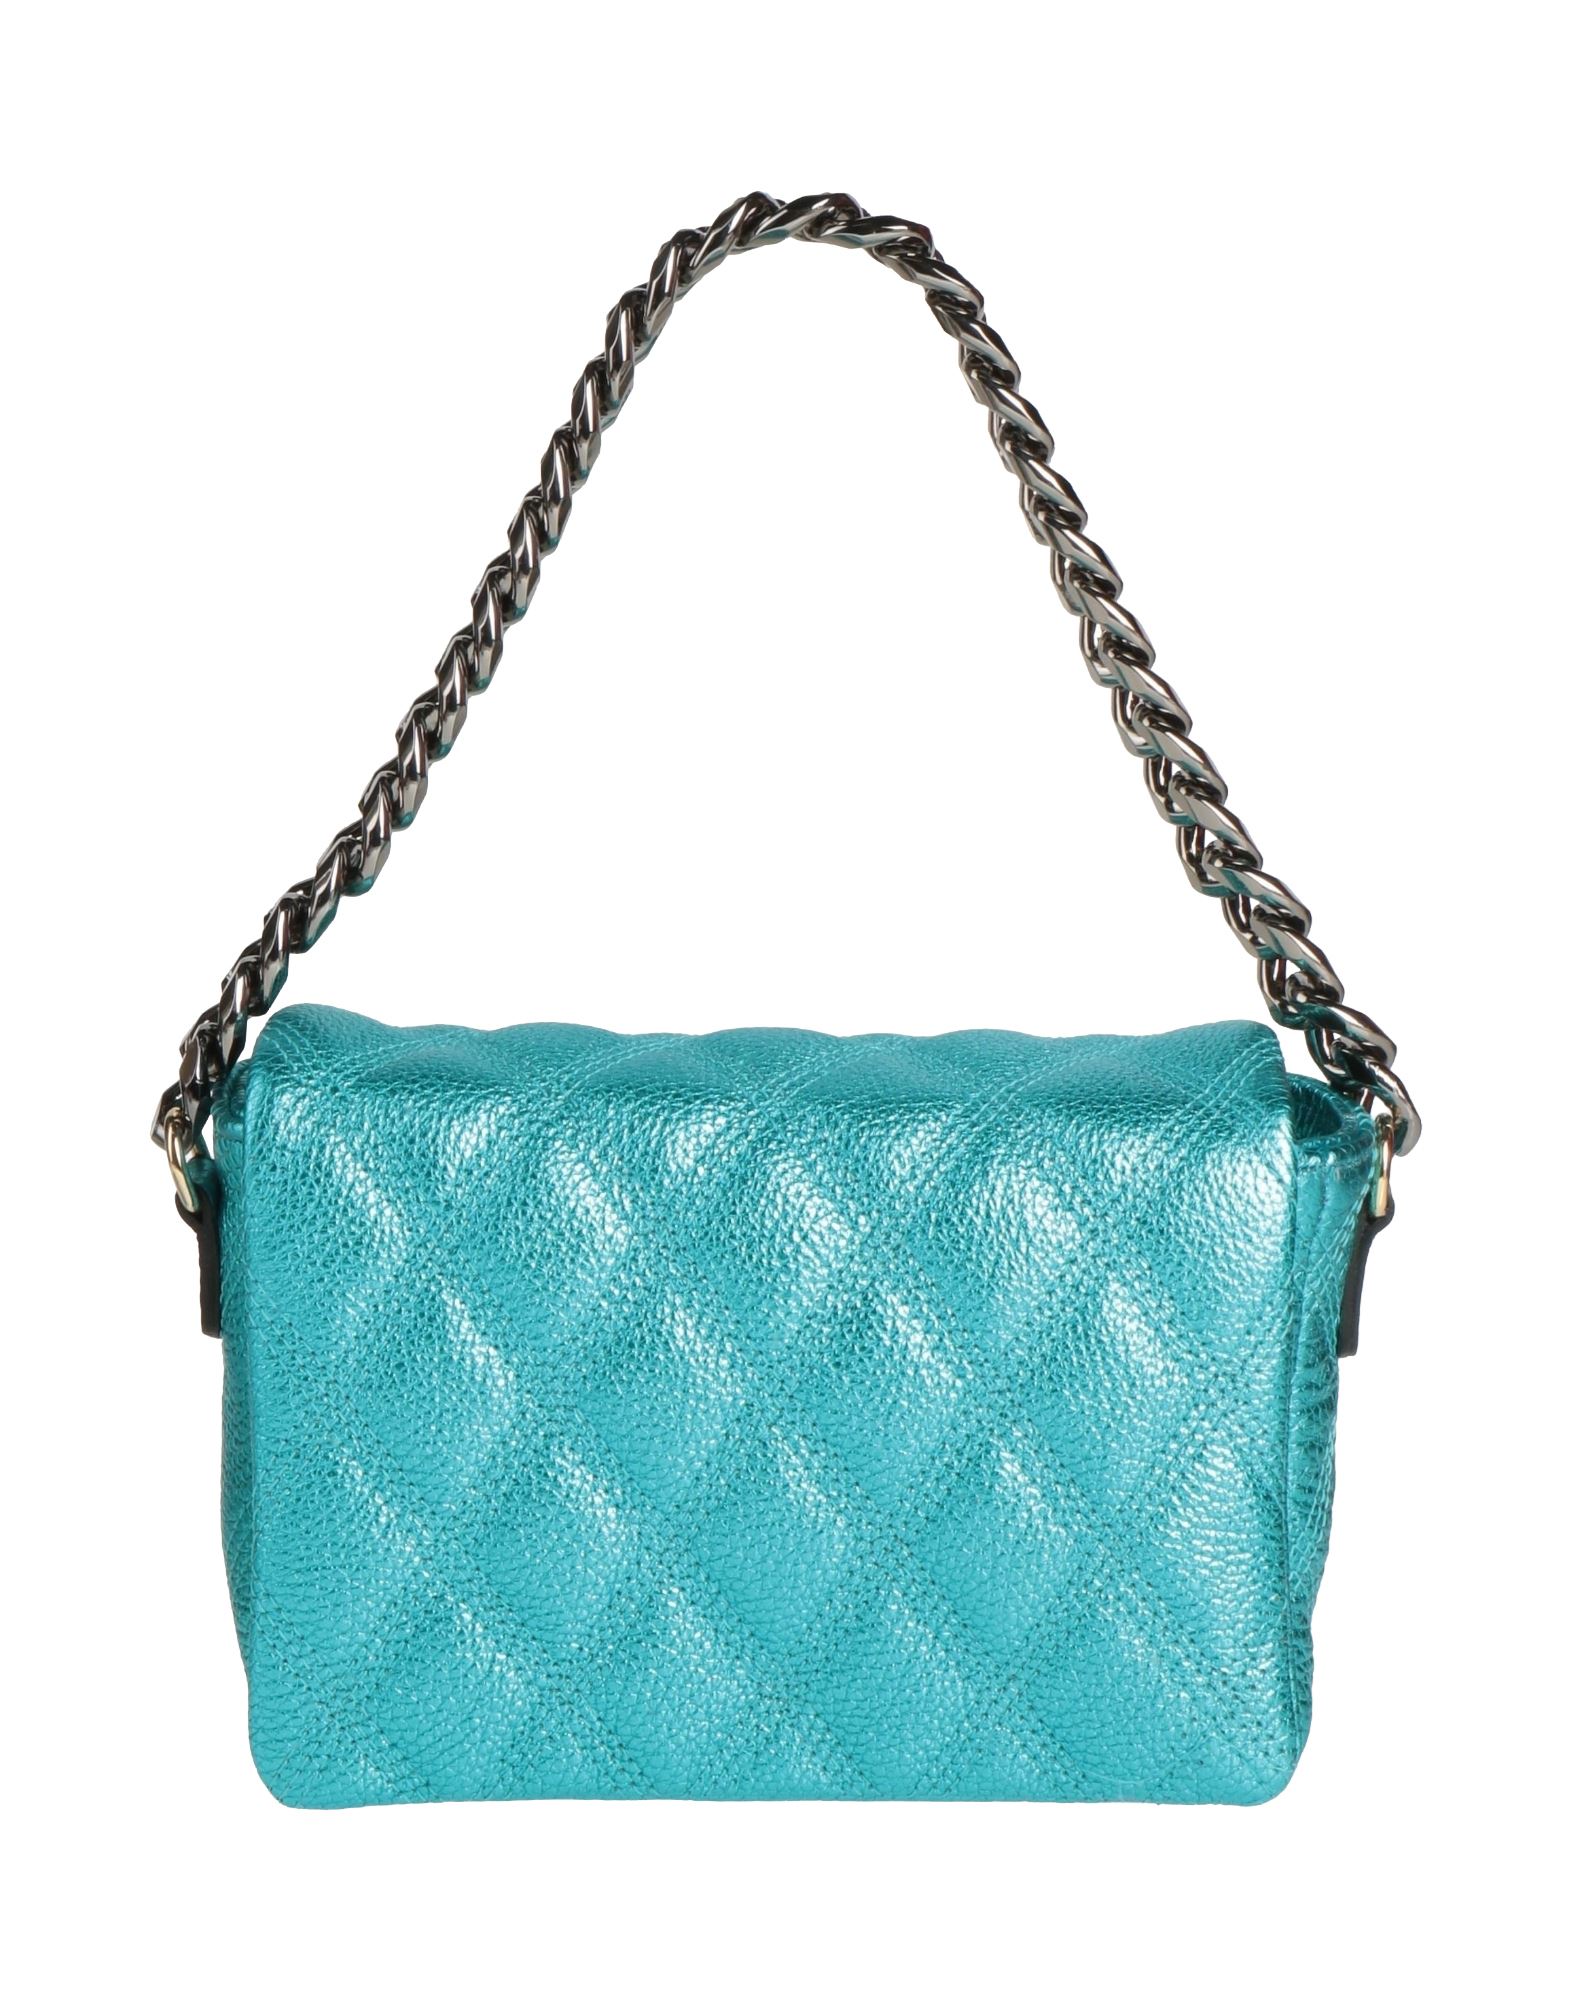 Ab Asia Bellucci Handbags In Turquoise